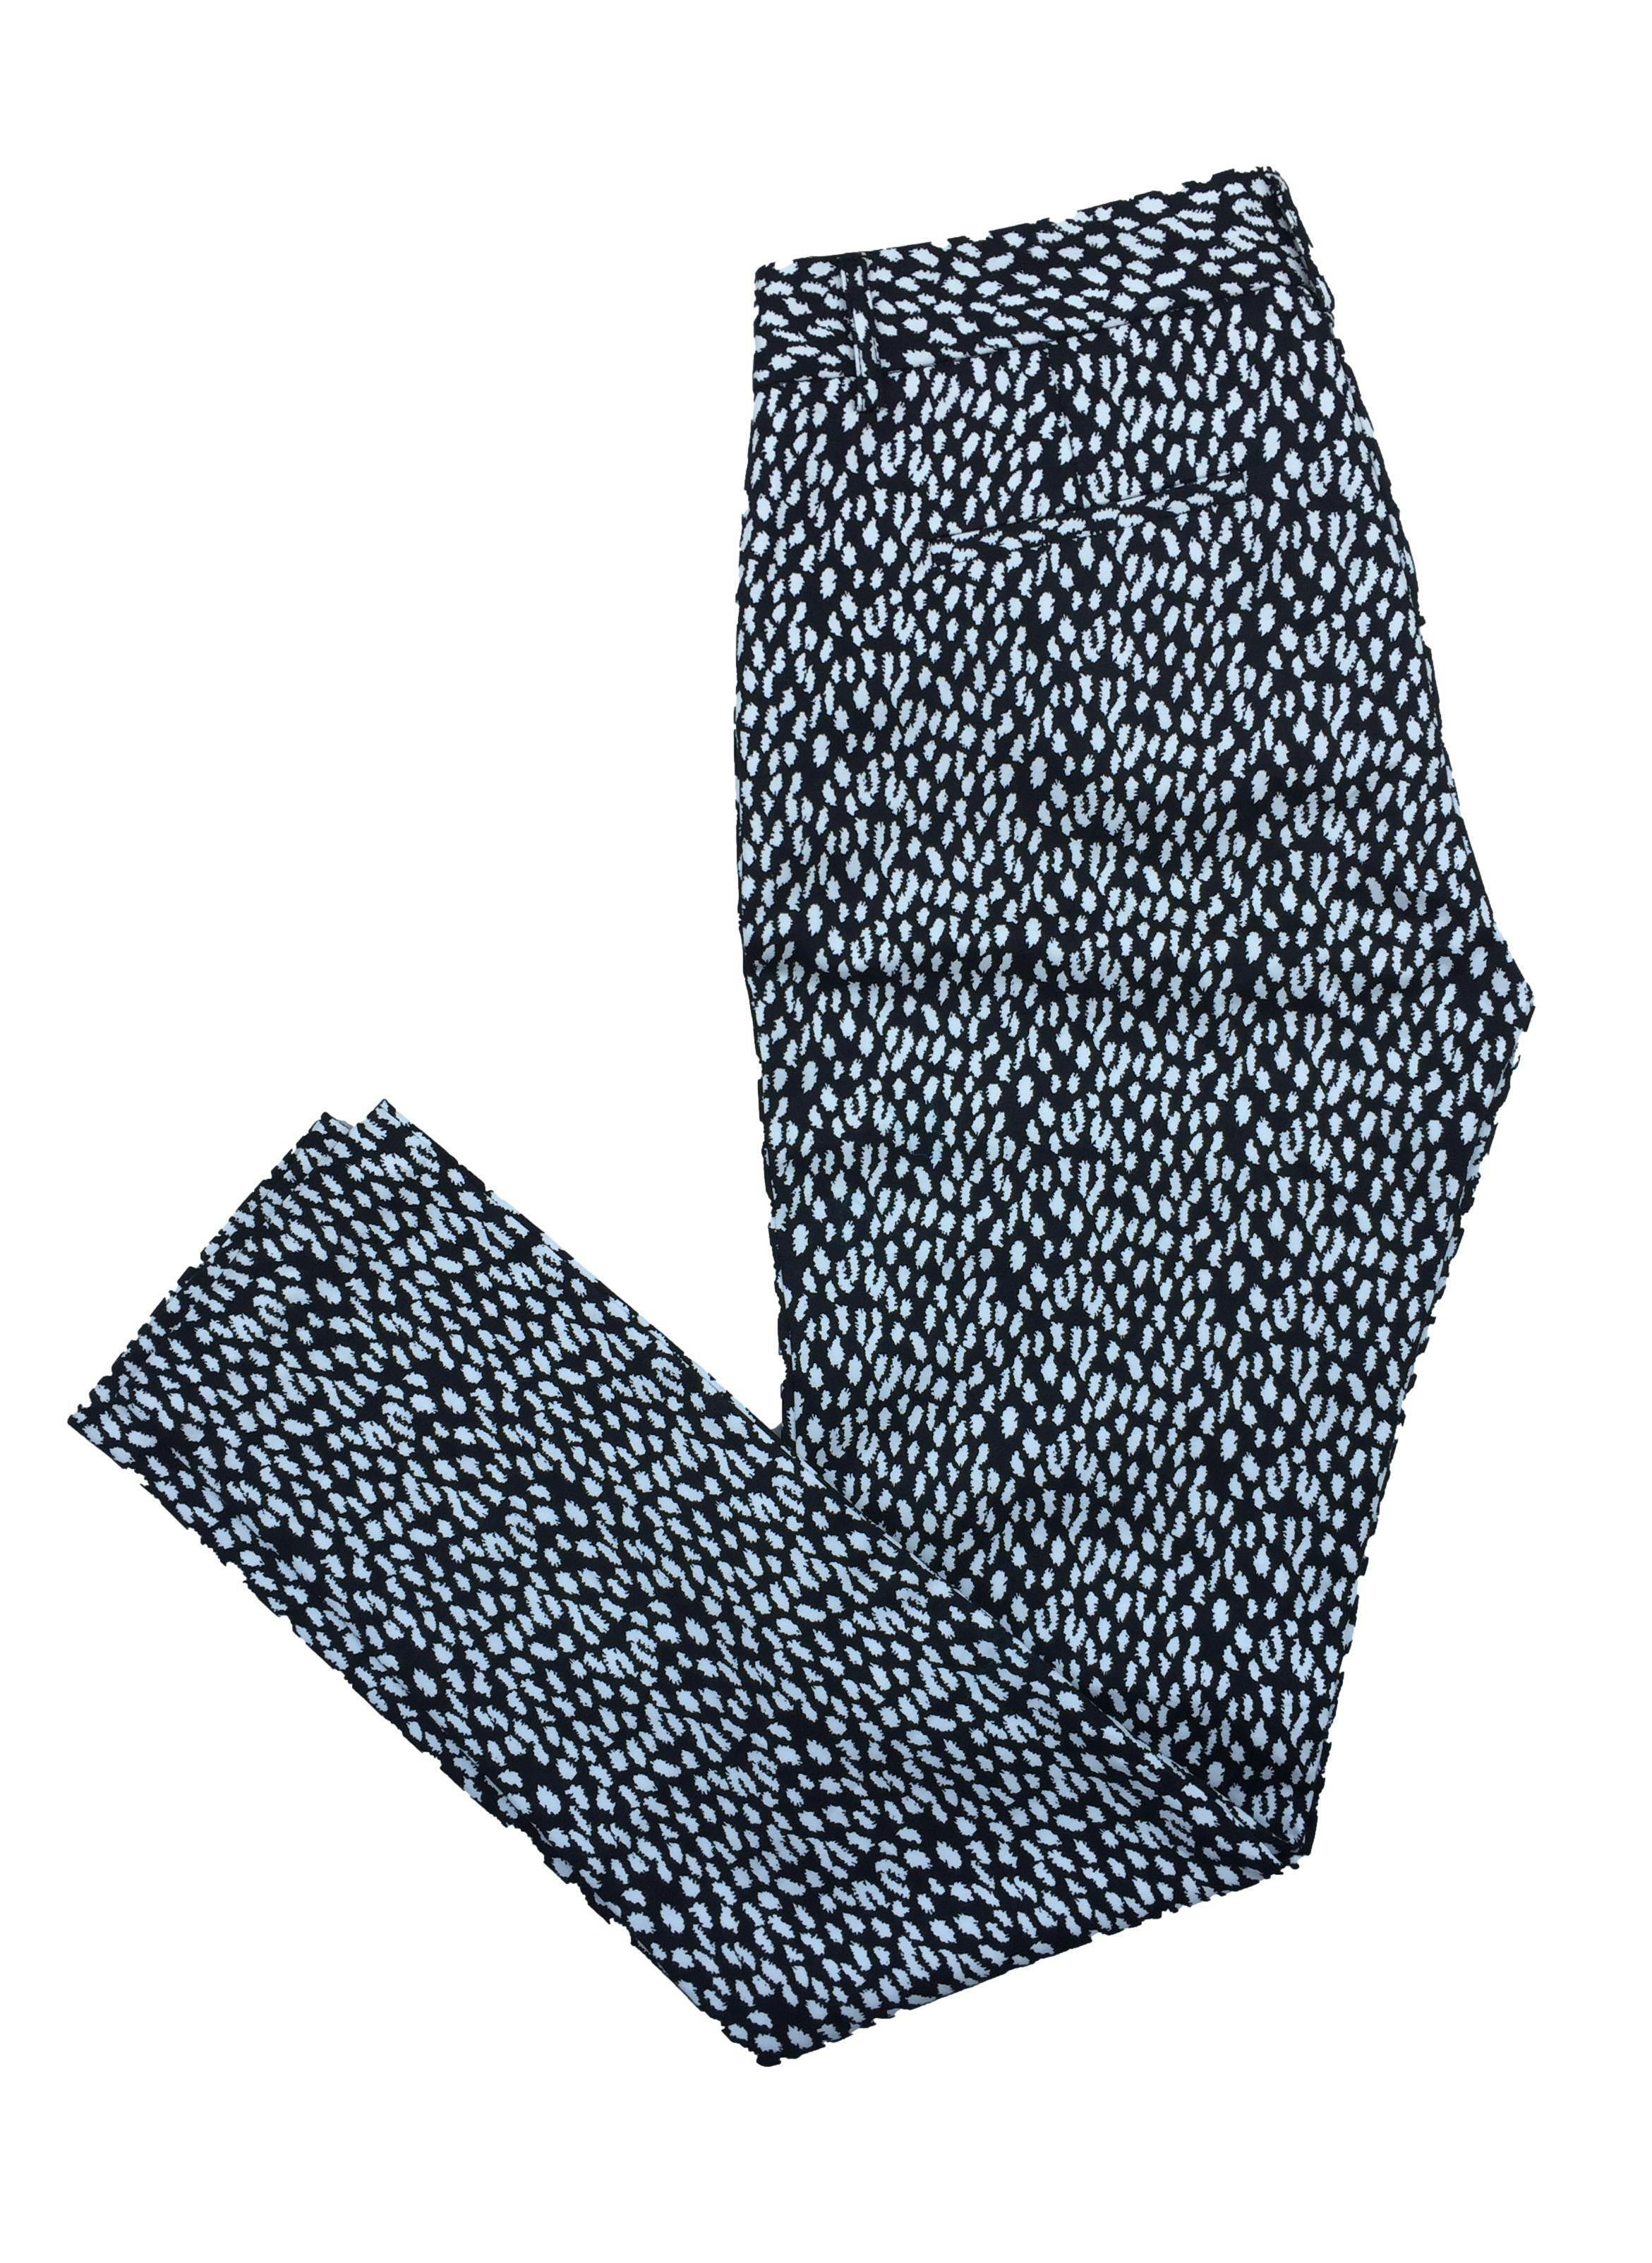 Pantalón Marquis slim fit con estampado en blanco y negro, bolsillos frontales y falsos bolsillos posteriores, tela 97% algodón. Cintura 80cm, Tiro 25cm, Largo 101cm.